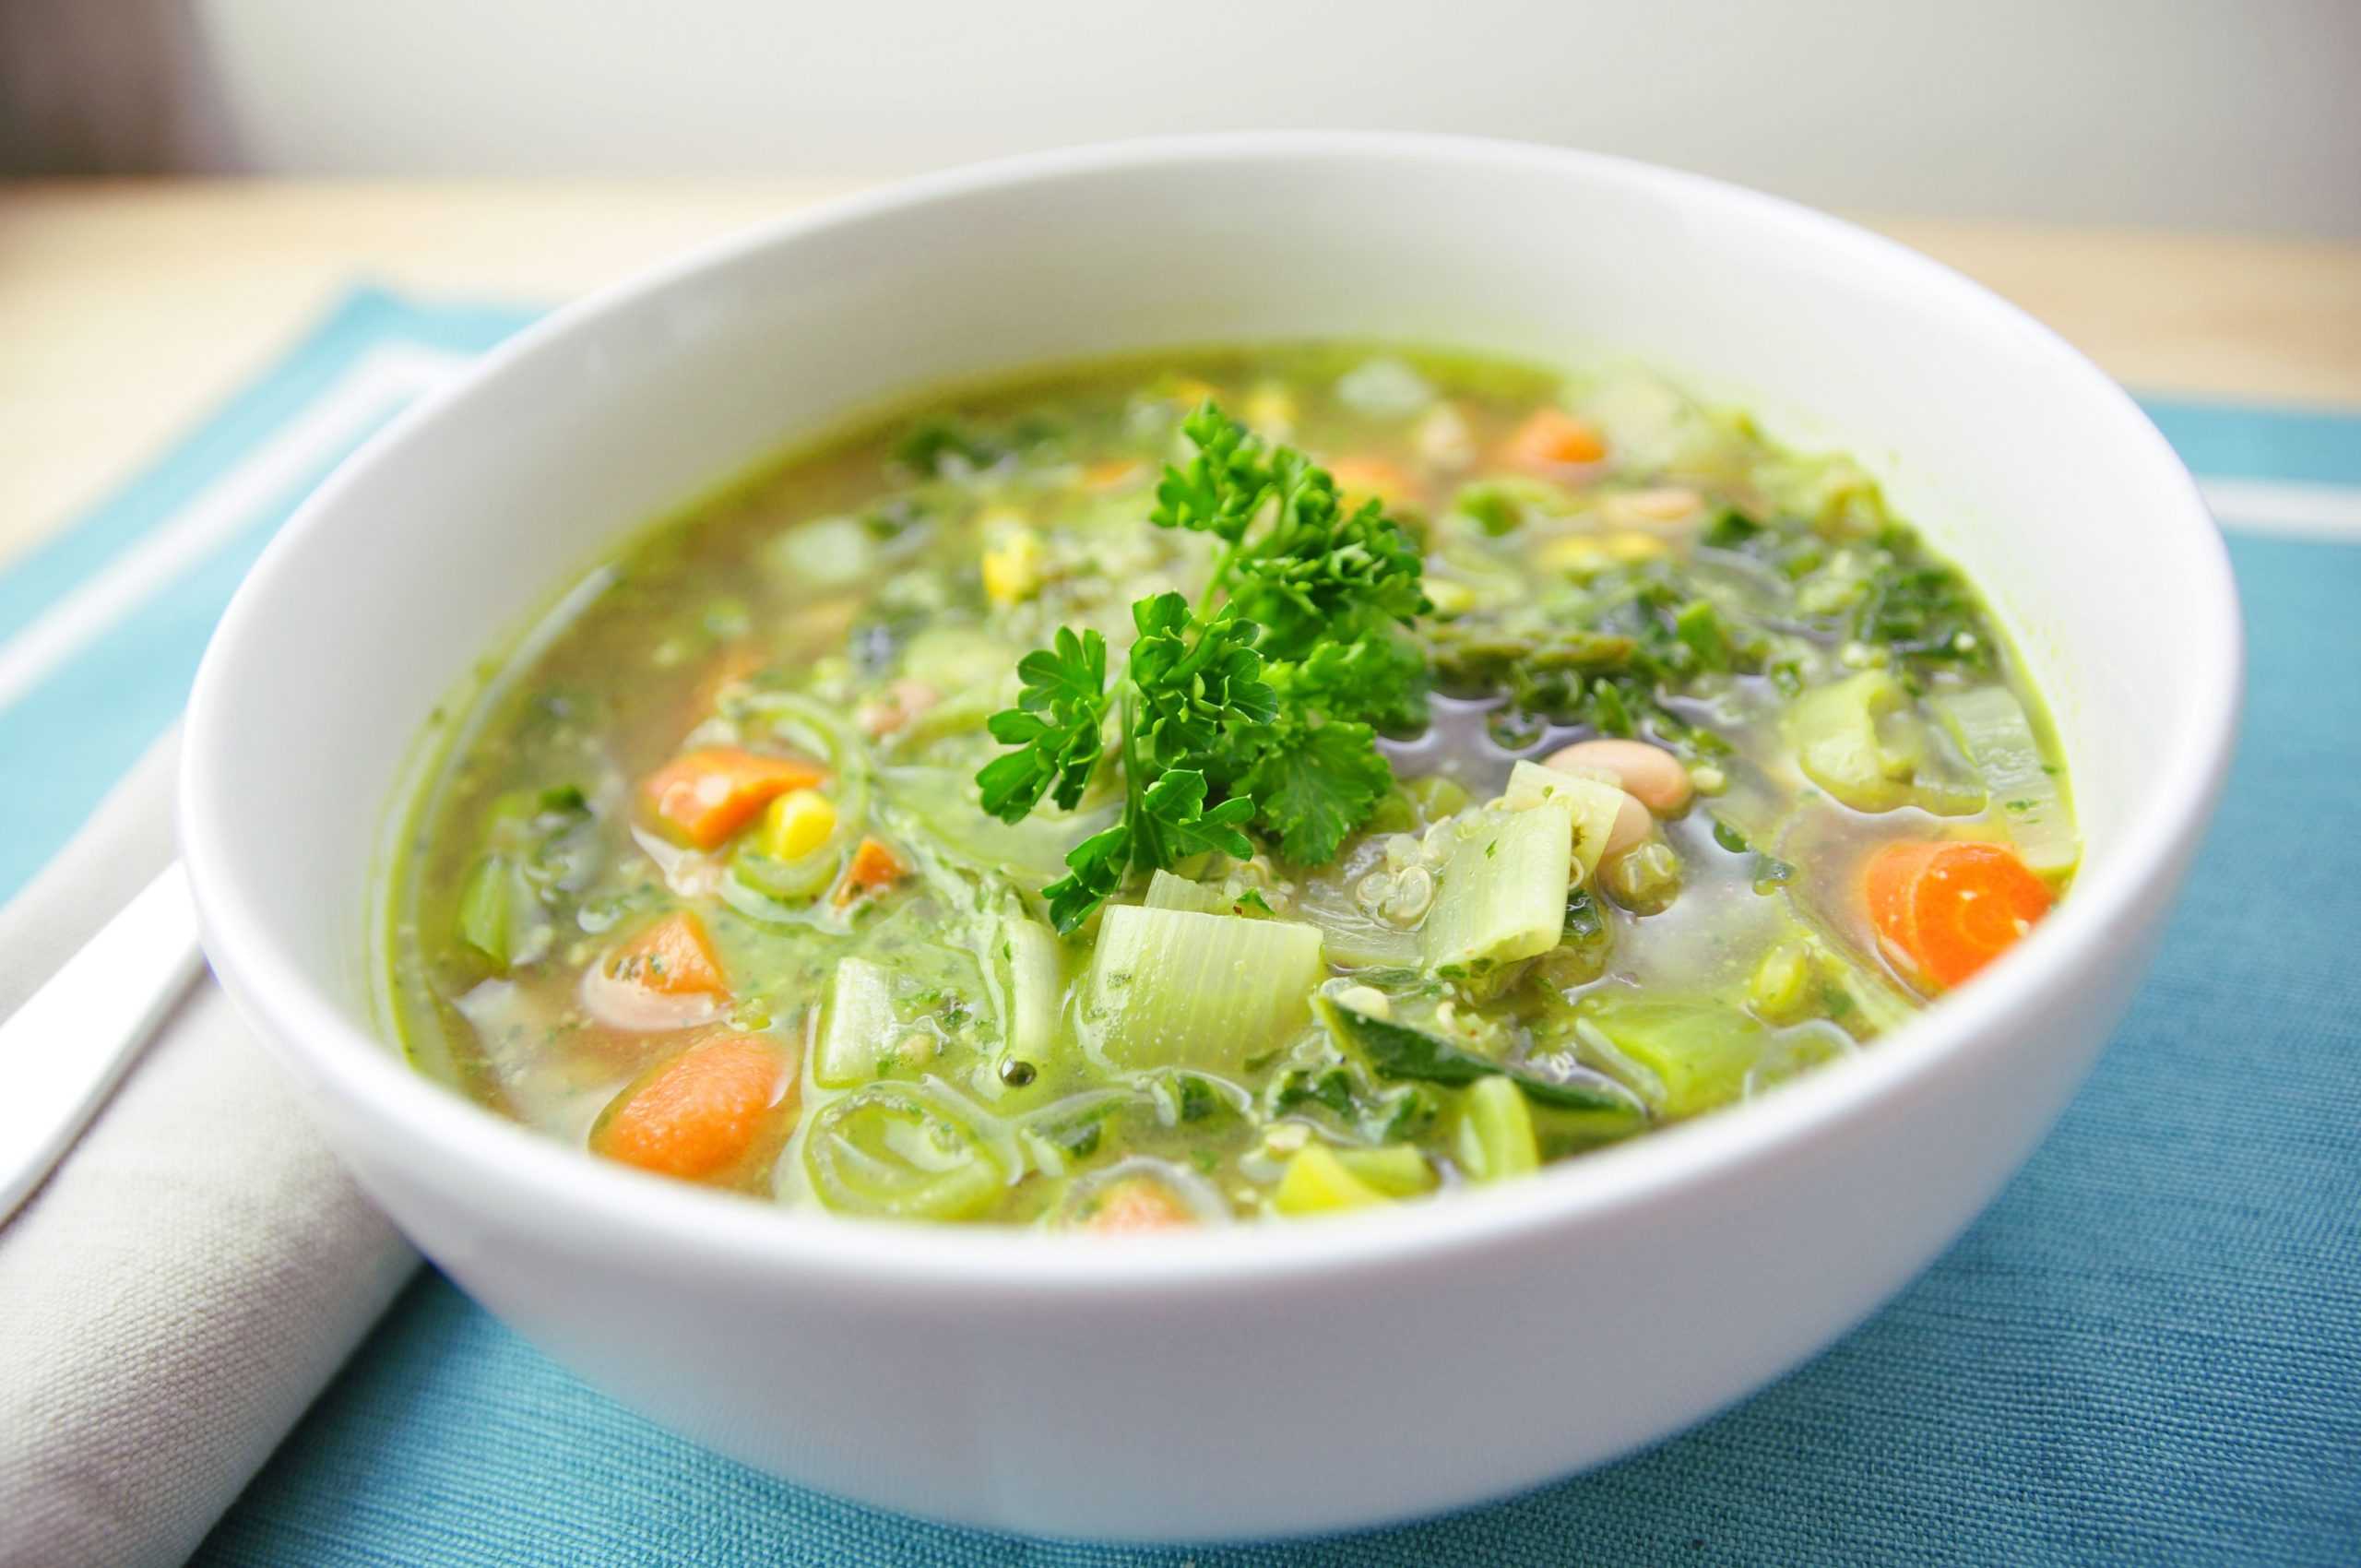 Диетический суп из цветной капусты - рецепт с пошаговым приготовлением и фото